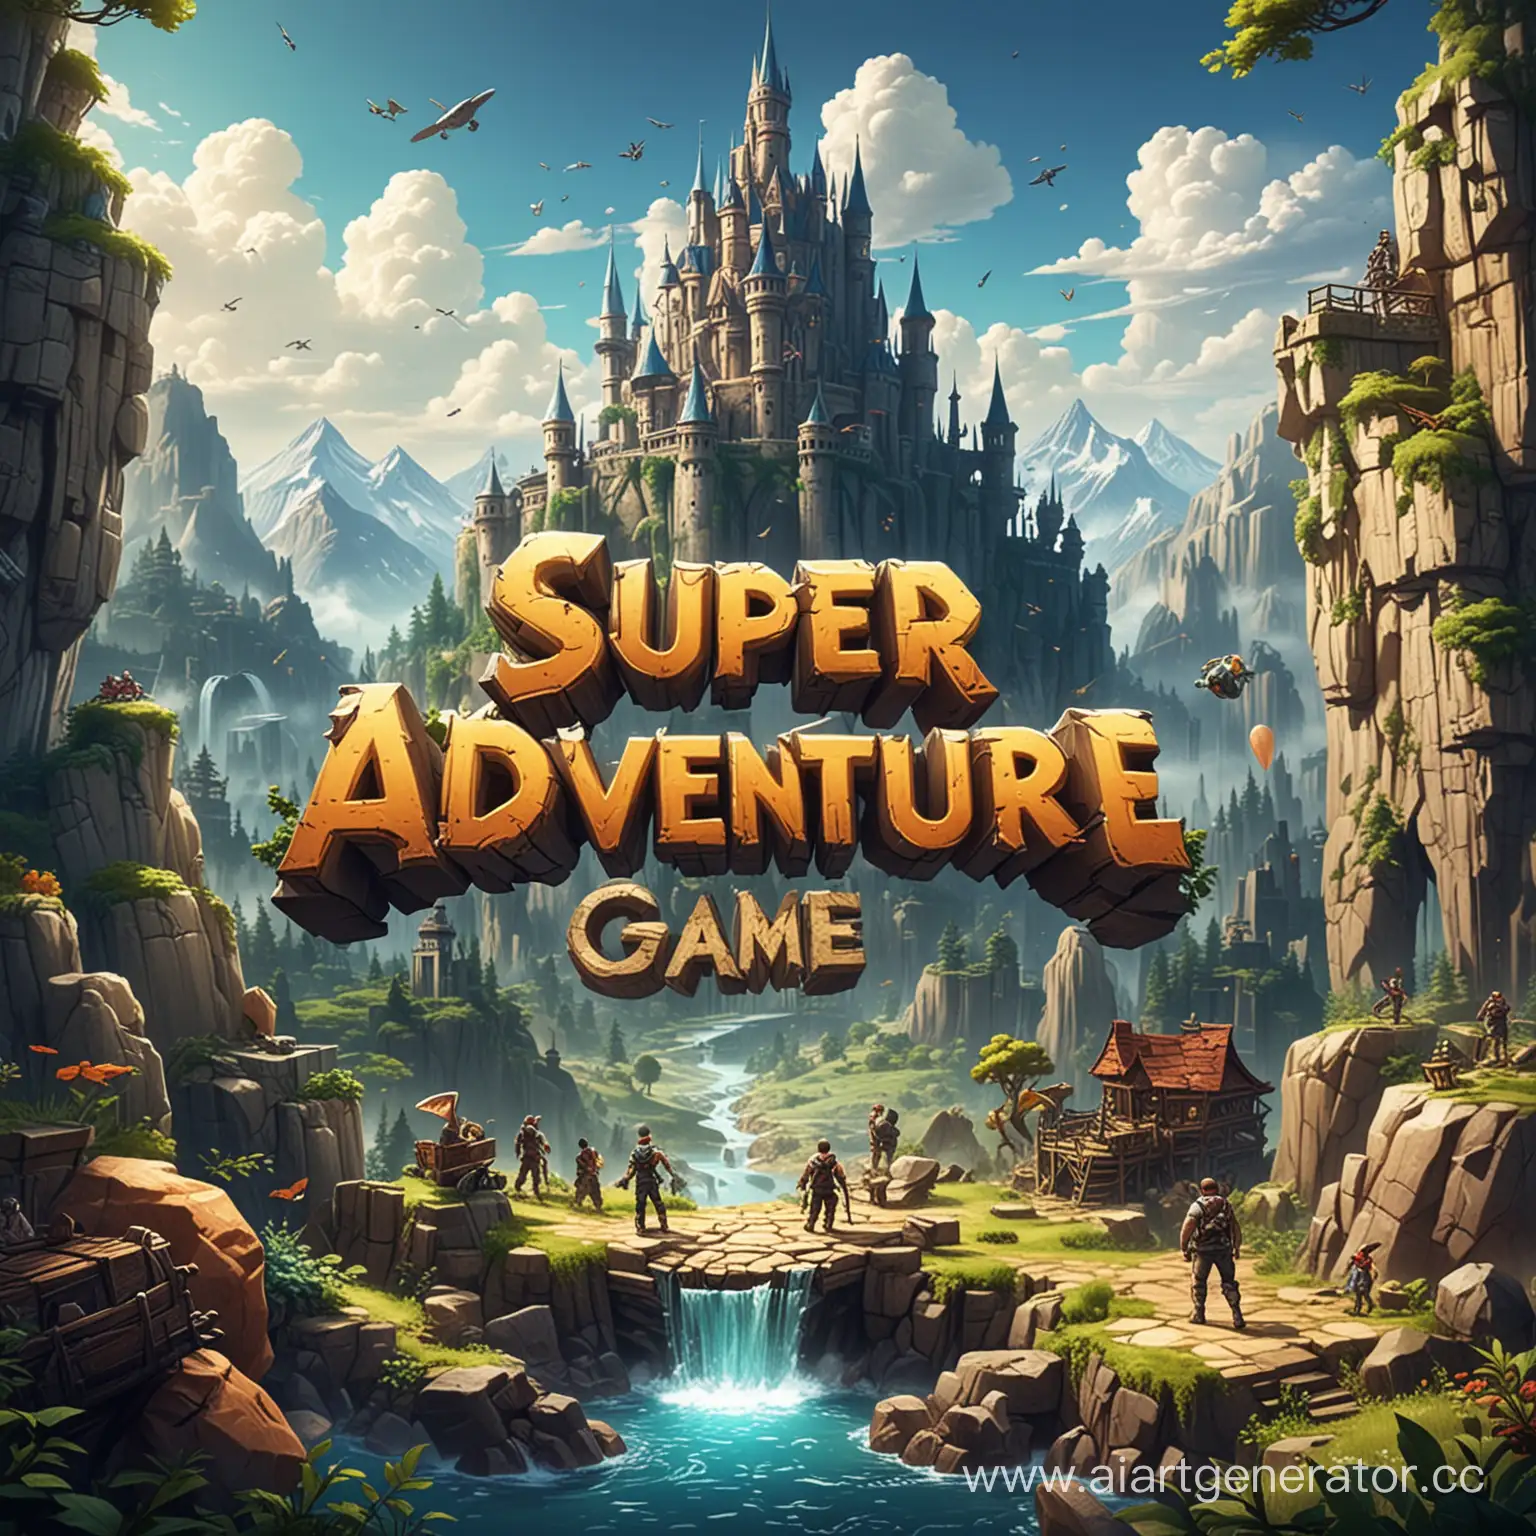 Название проекта: "Игра Super Adventure", которая погрузит игроков в захватывающий мир приключений, головоломок и сражений с боссами. Представлена в жанре action-adventure.